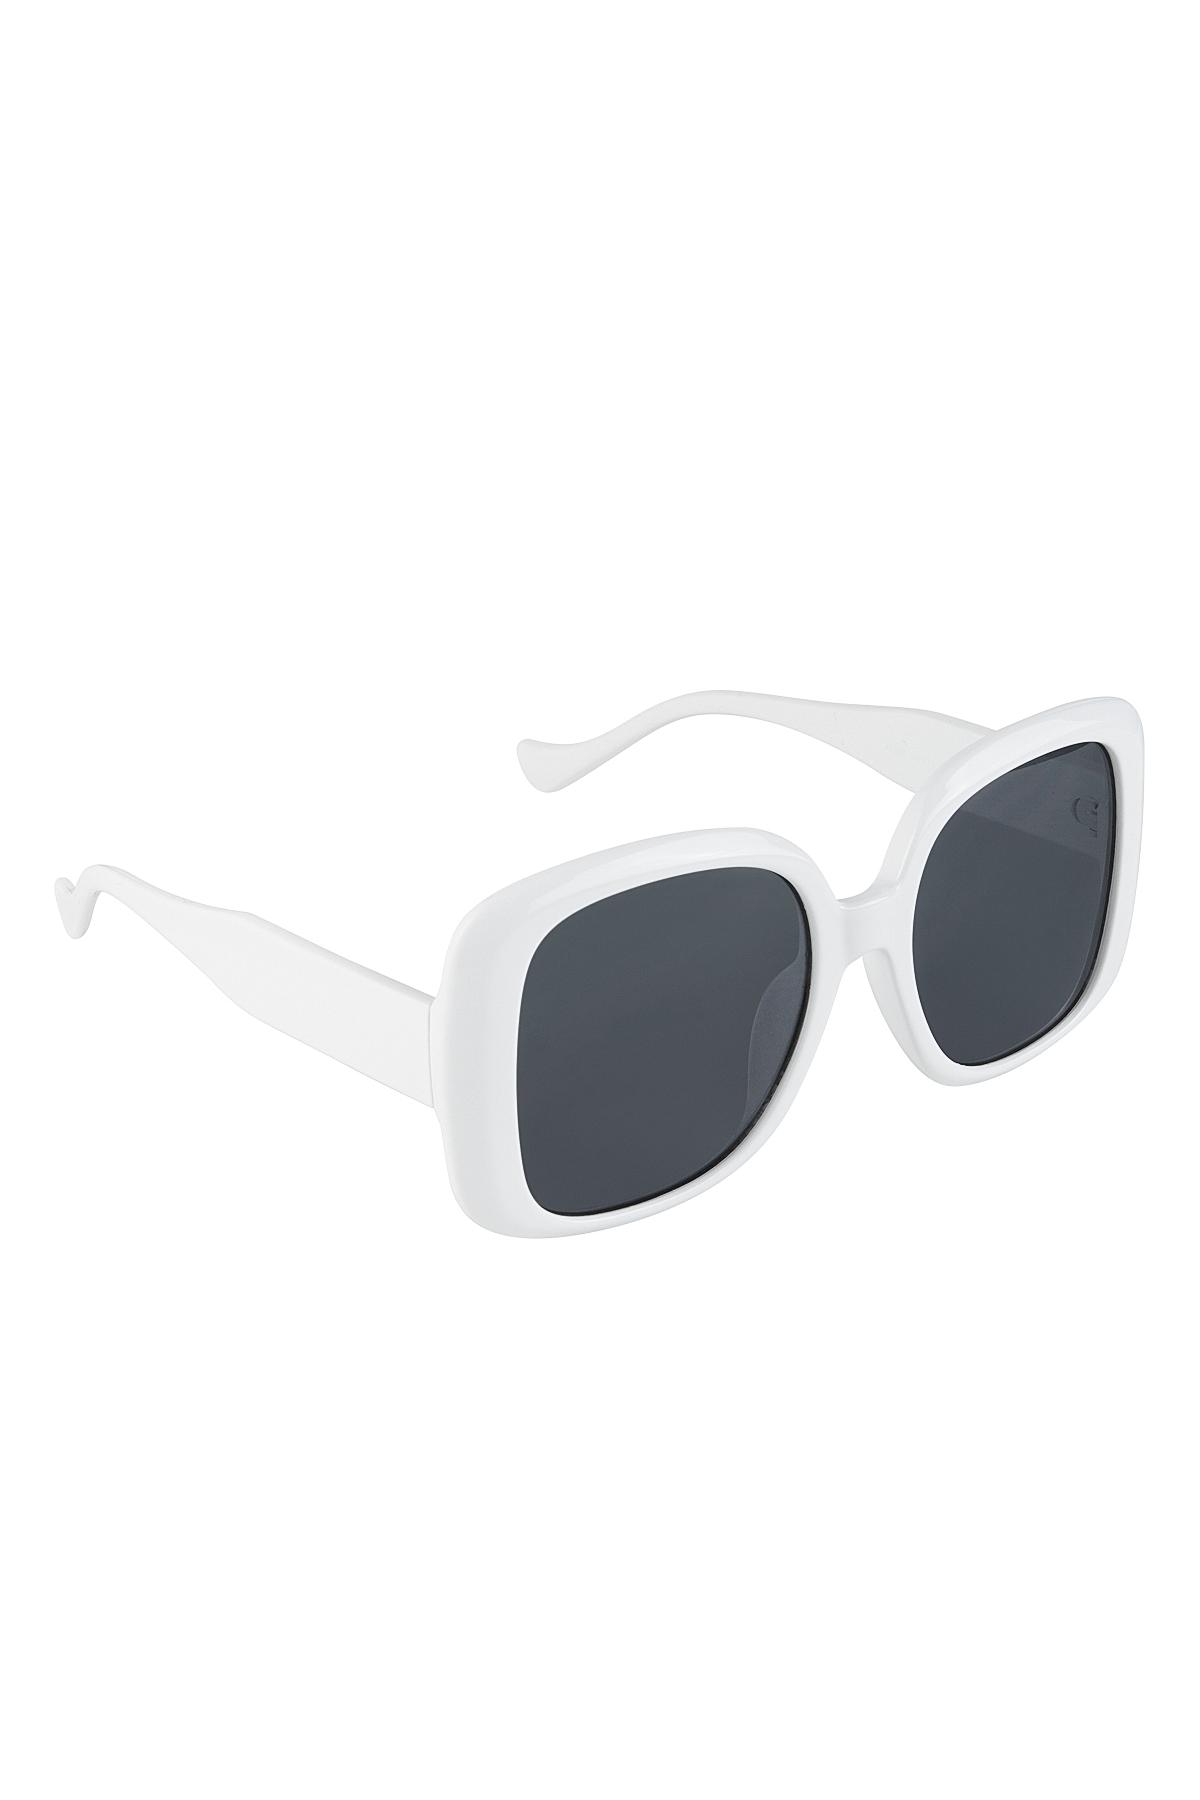 Temel güneş gözlüğü White PC One size h5 